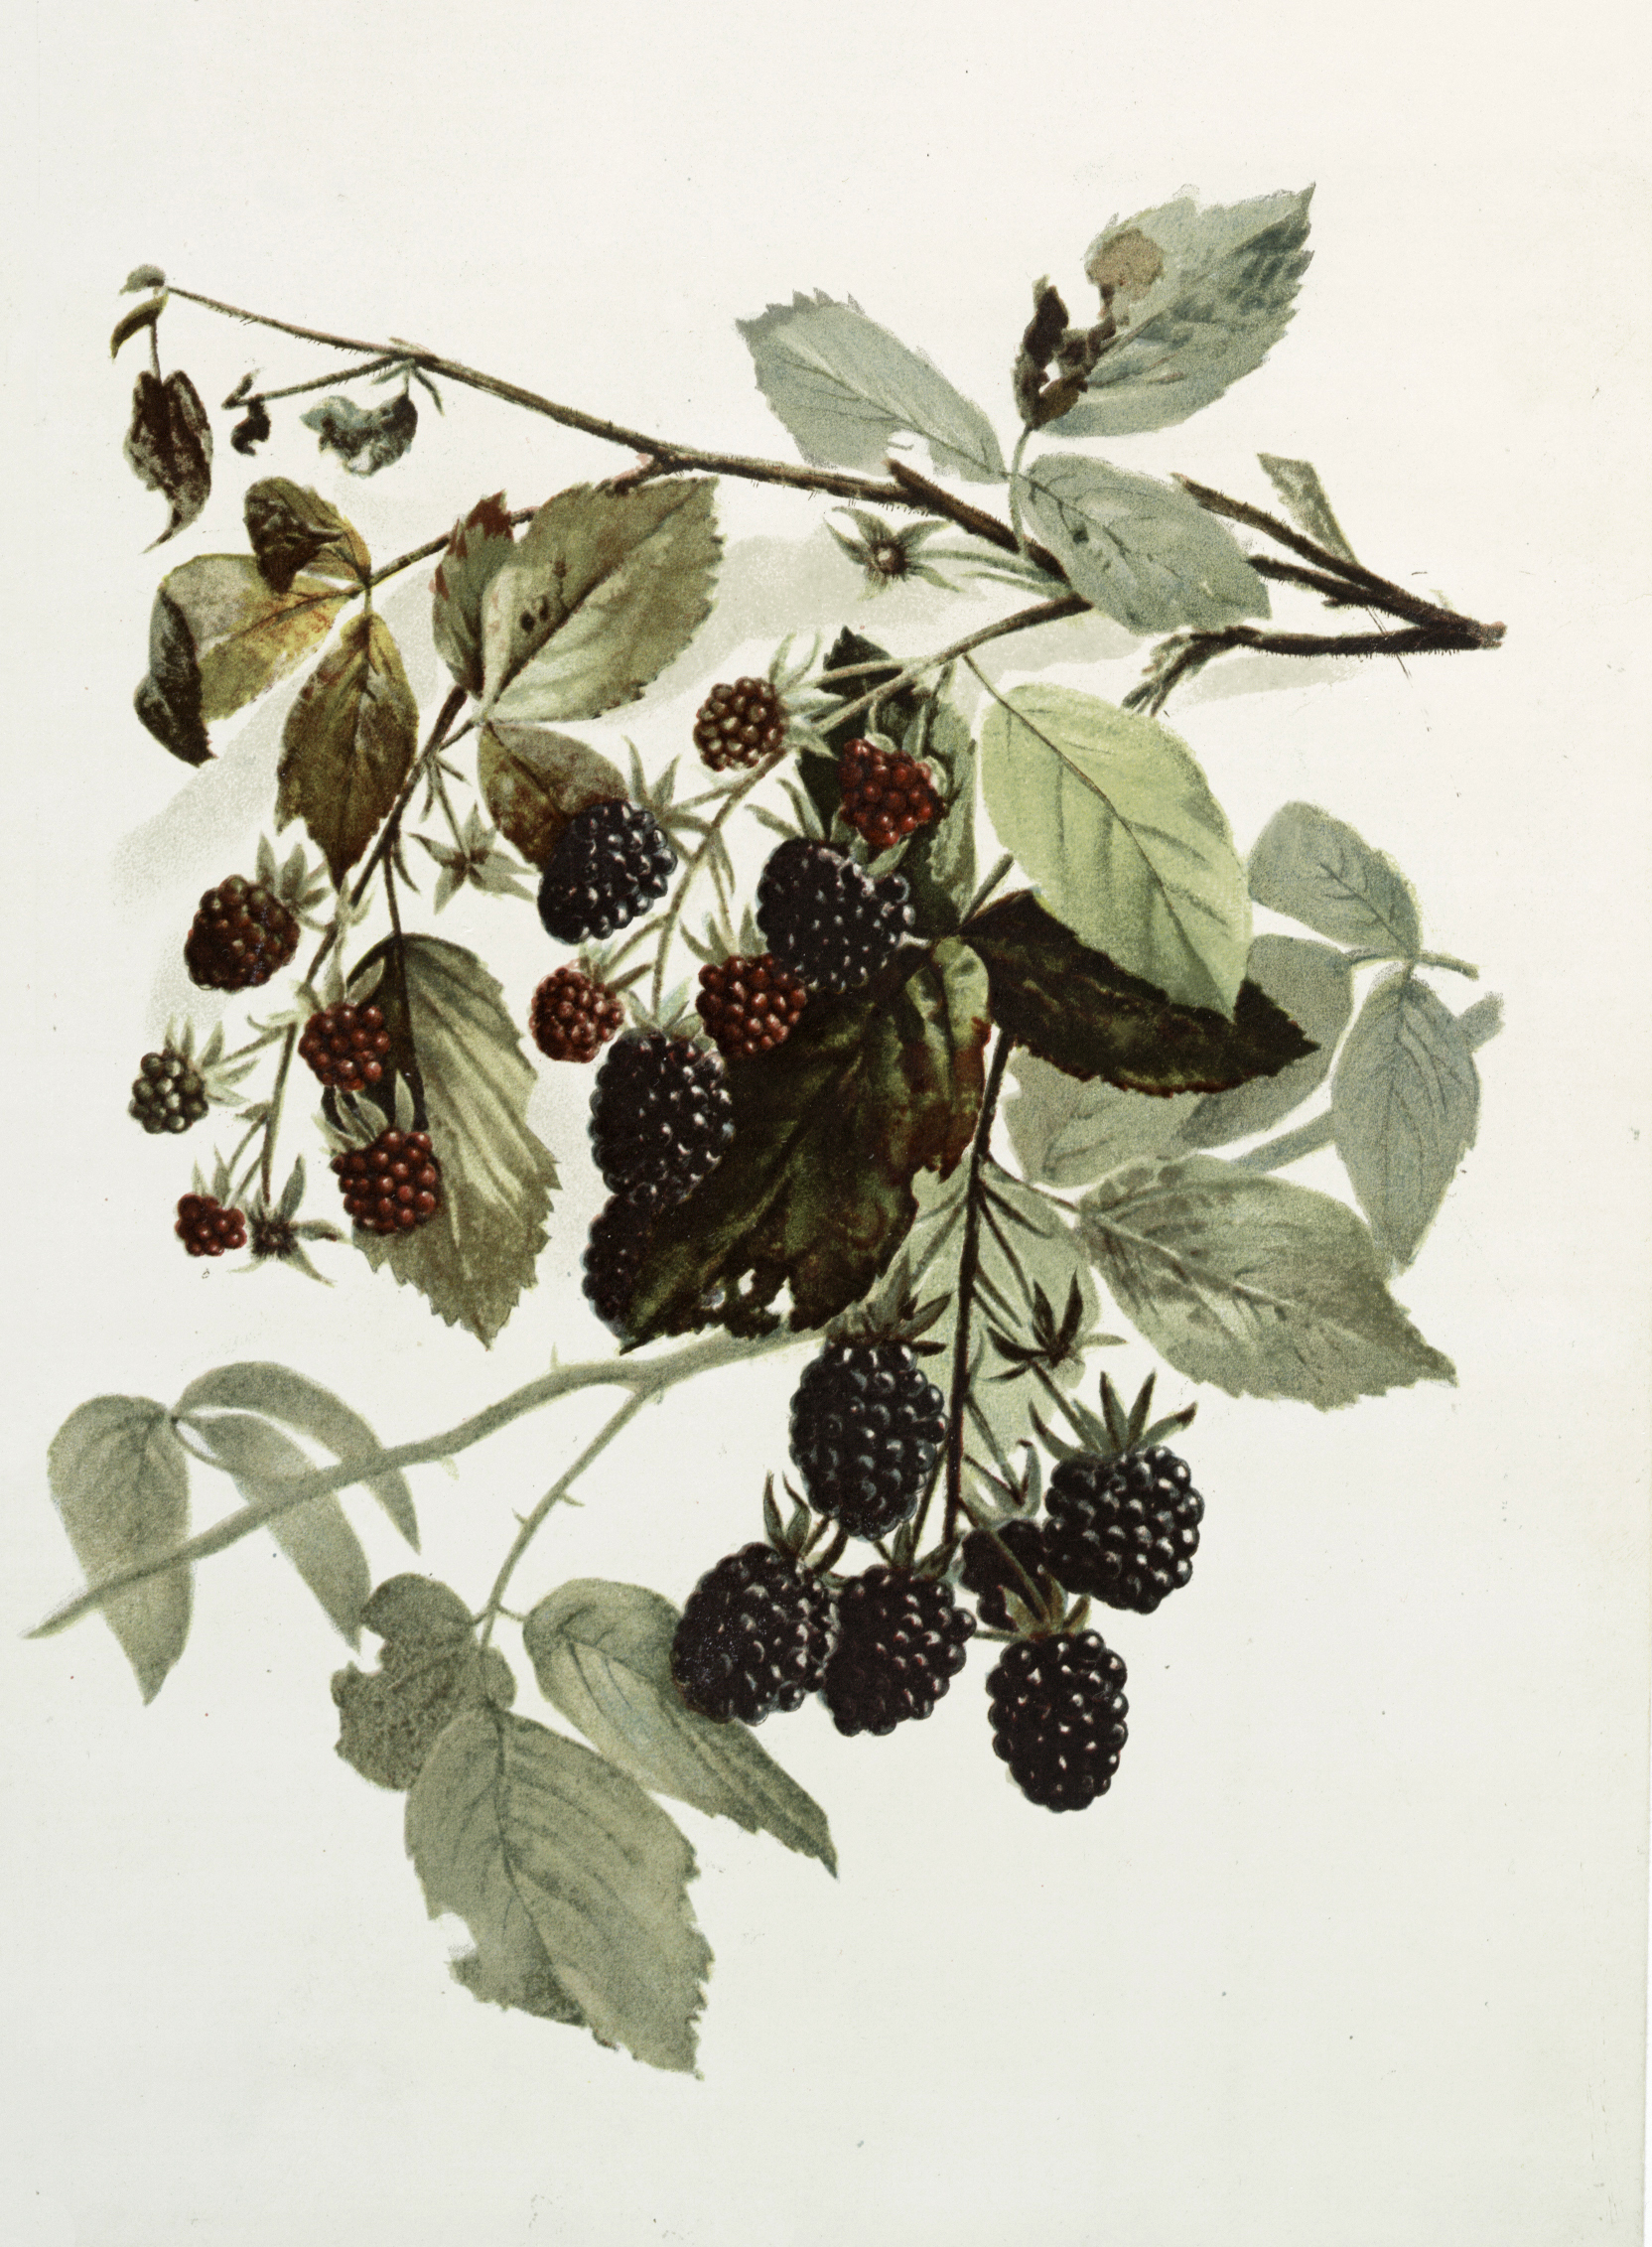 12 by 18 3dRose Ornate Vintage Stylized Blackberries Fruit Illustration Garden Flag